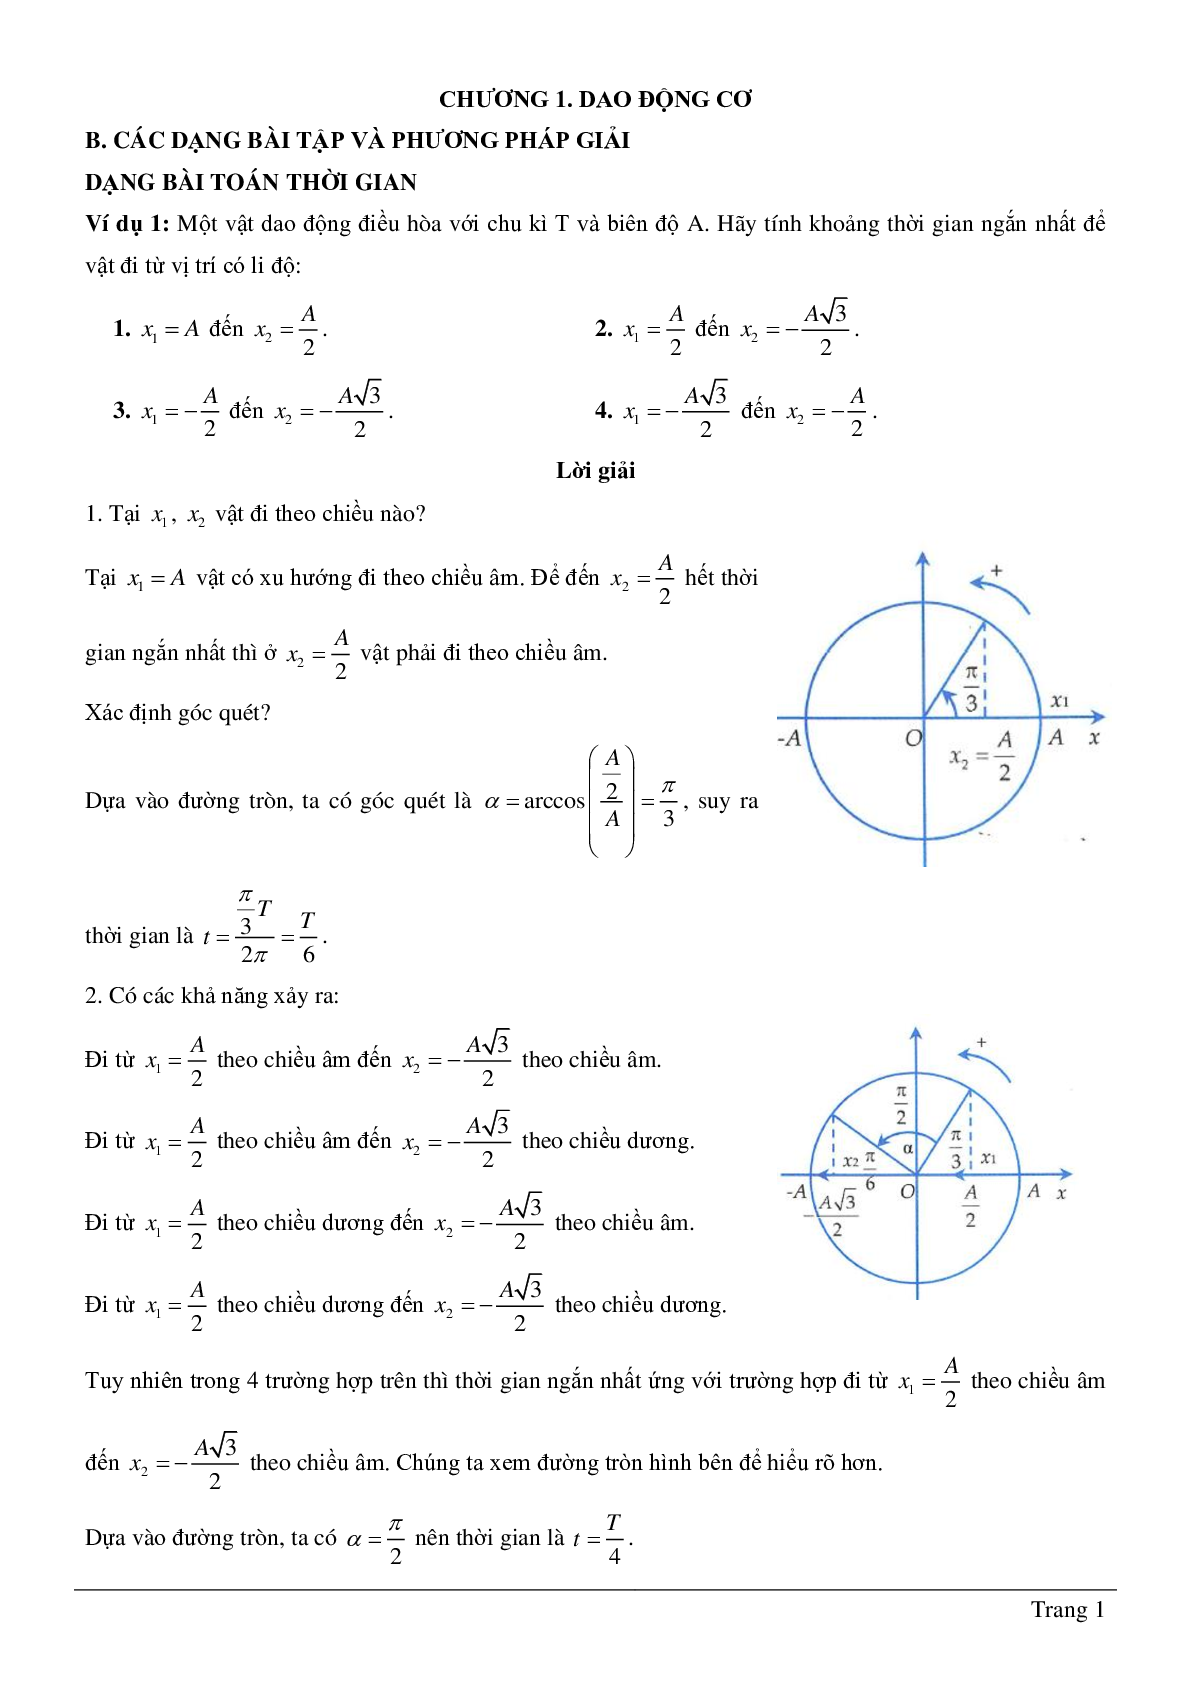 Các dạng bài toán chương Dao động cơ môn Vật lý lớp 12 (trang 1)